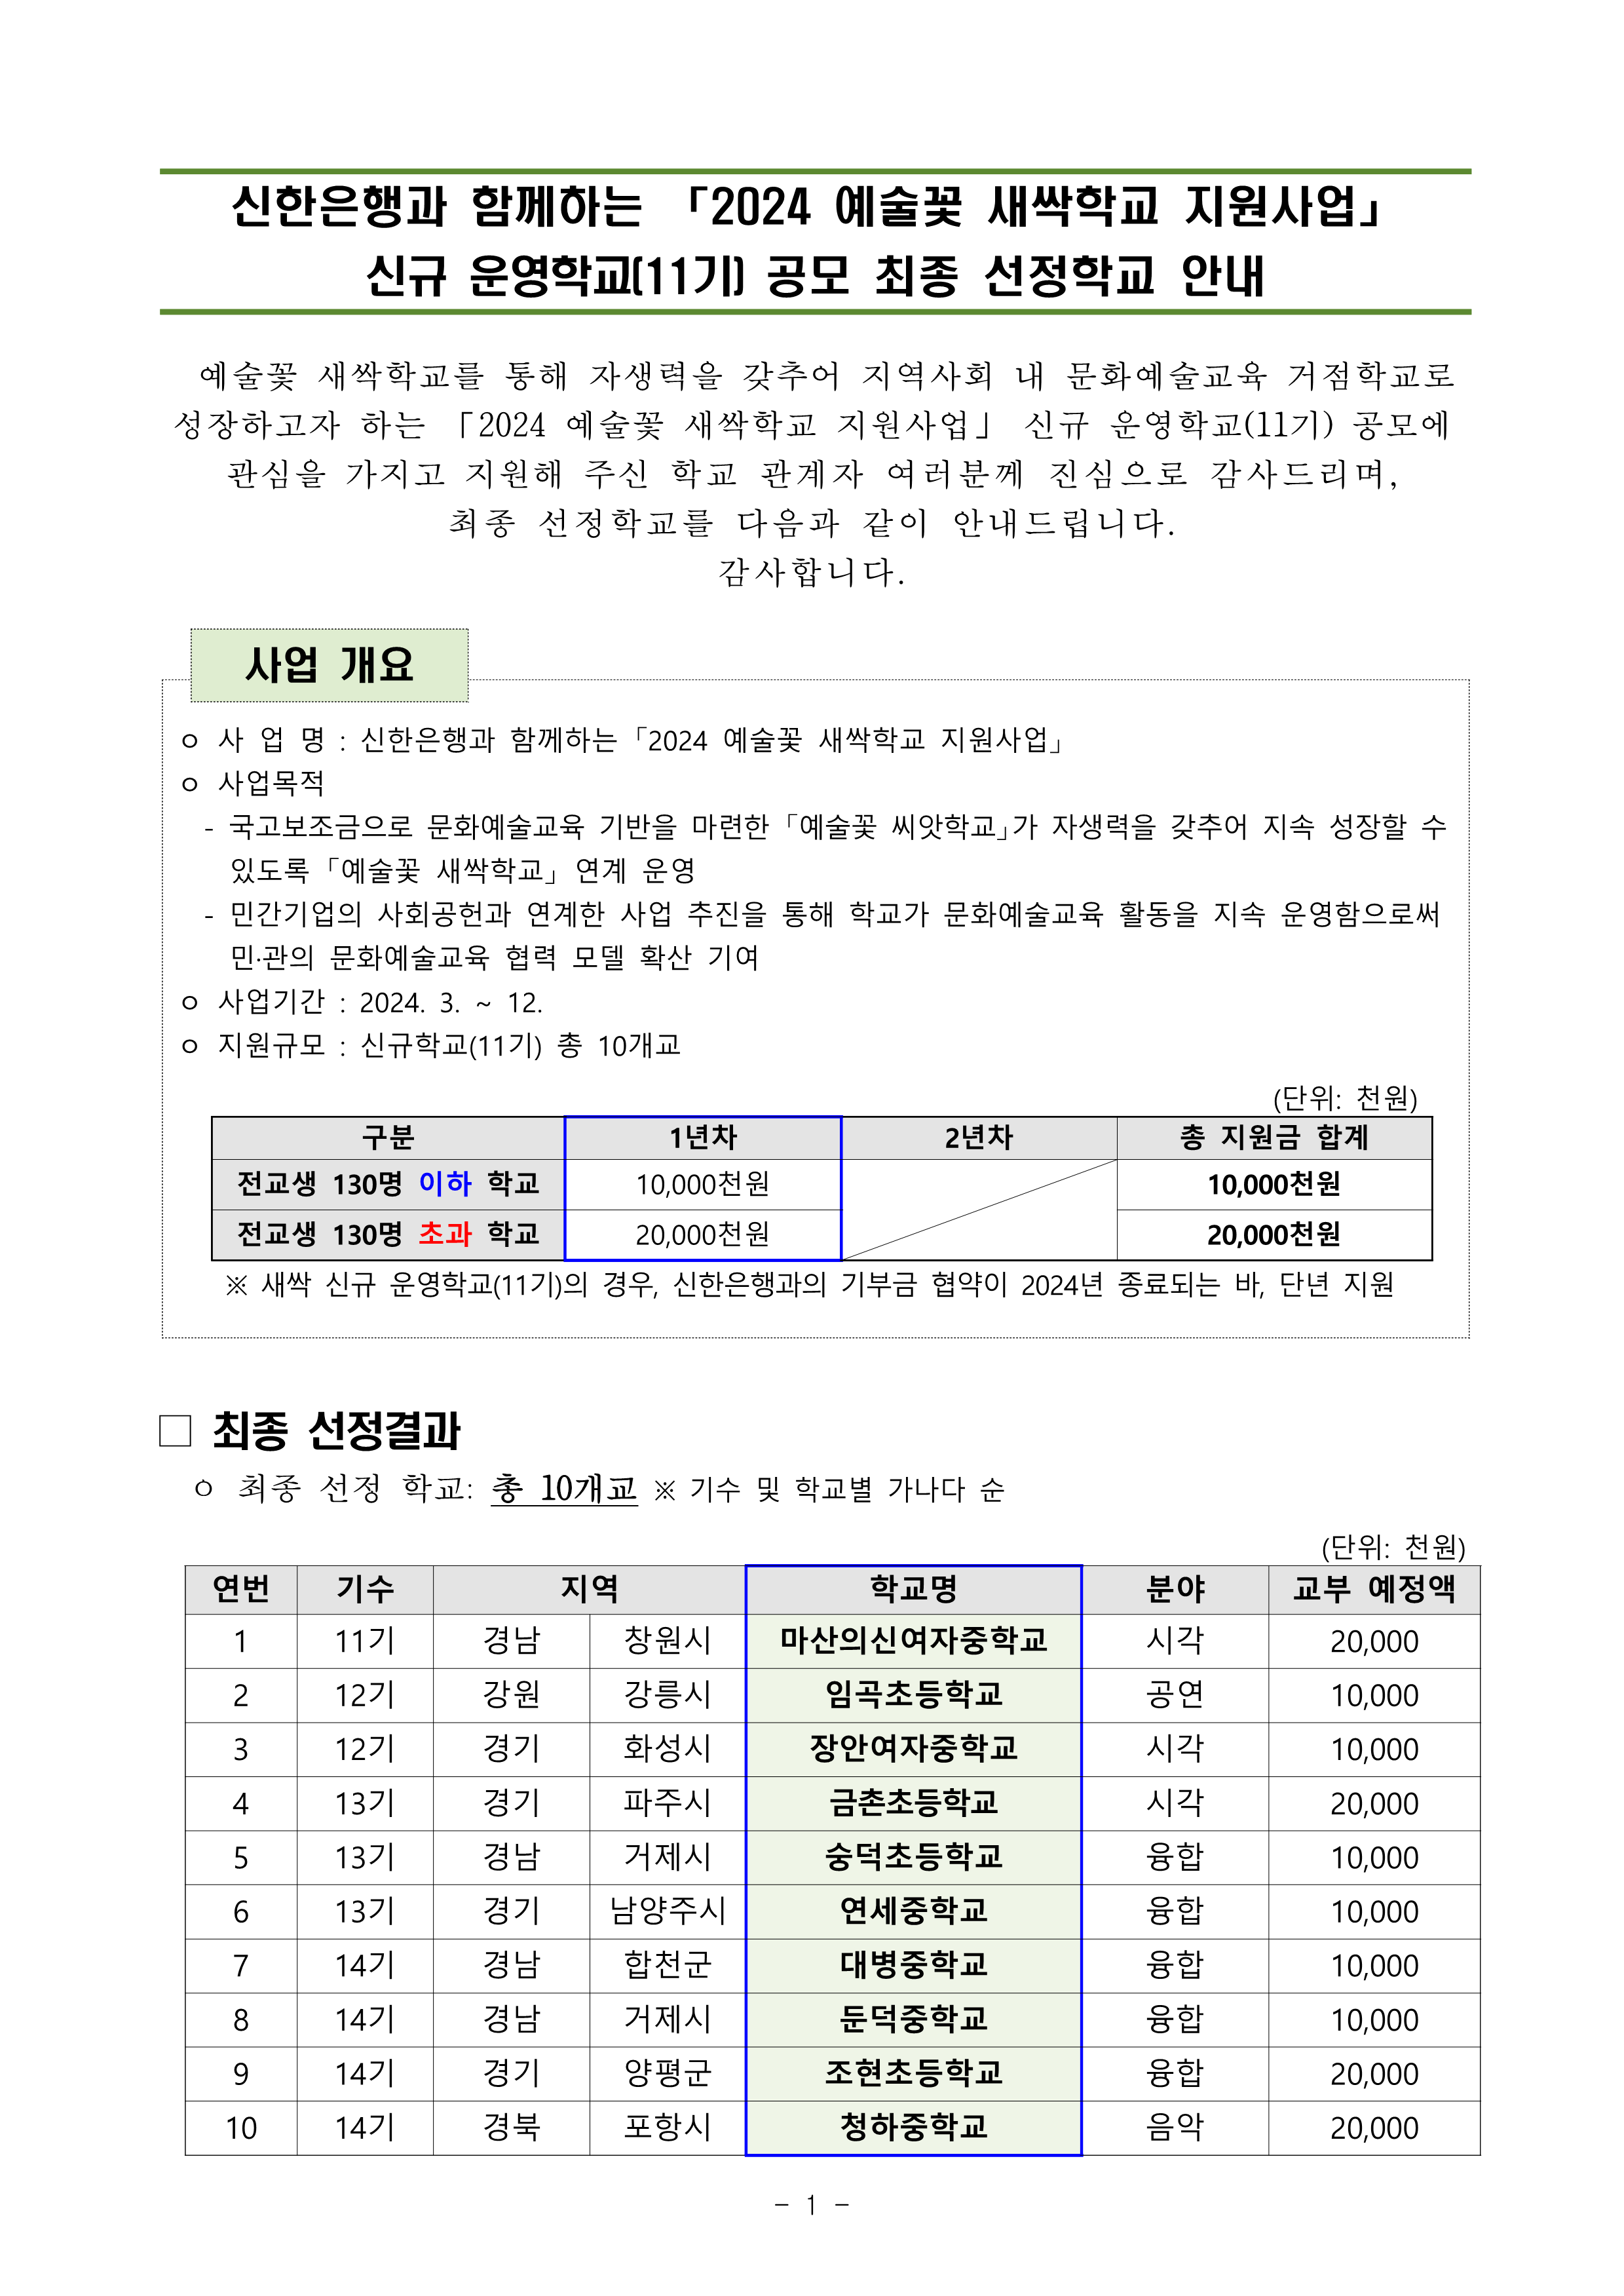 사본 -[붙임1] 2024 예술꽃 새싹학교 신규 운영학교(11기) 선정결과 안내_1 (2).png